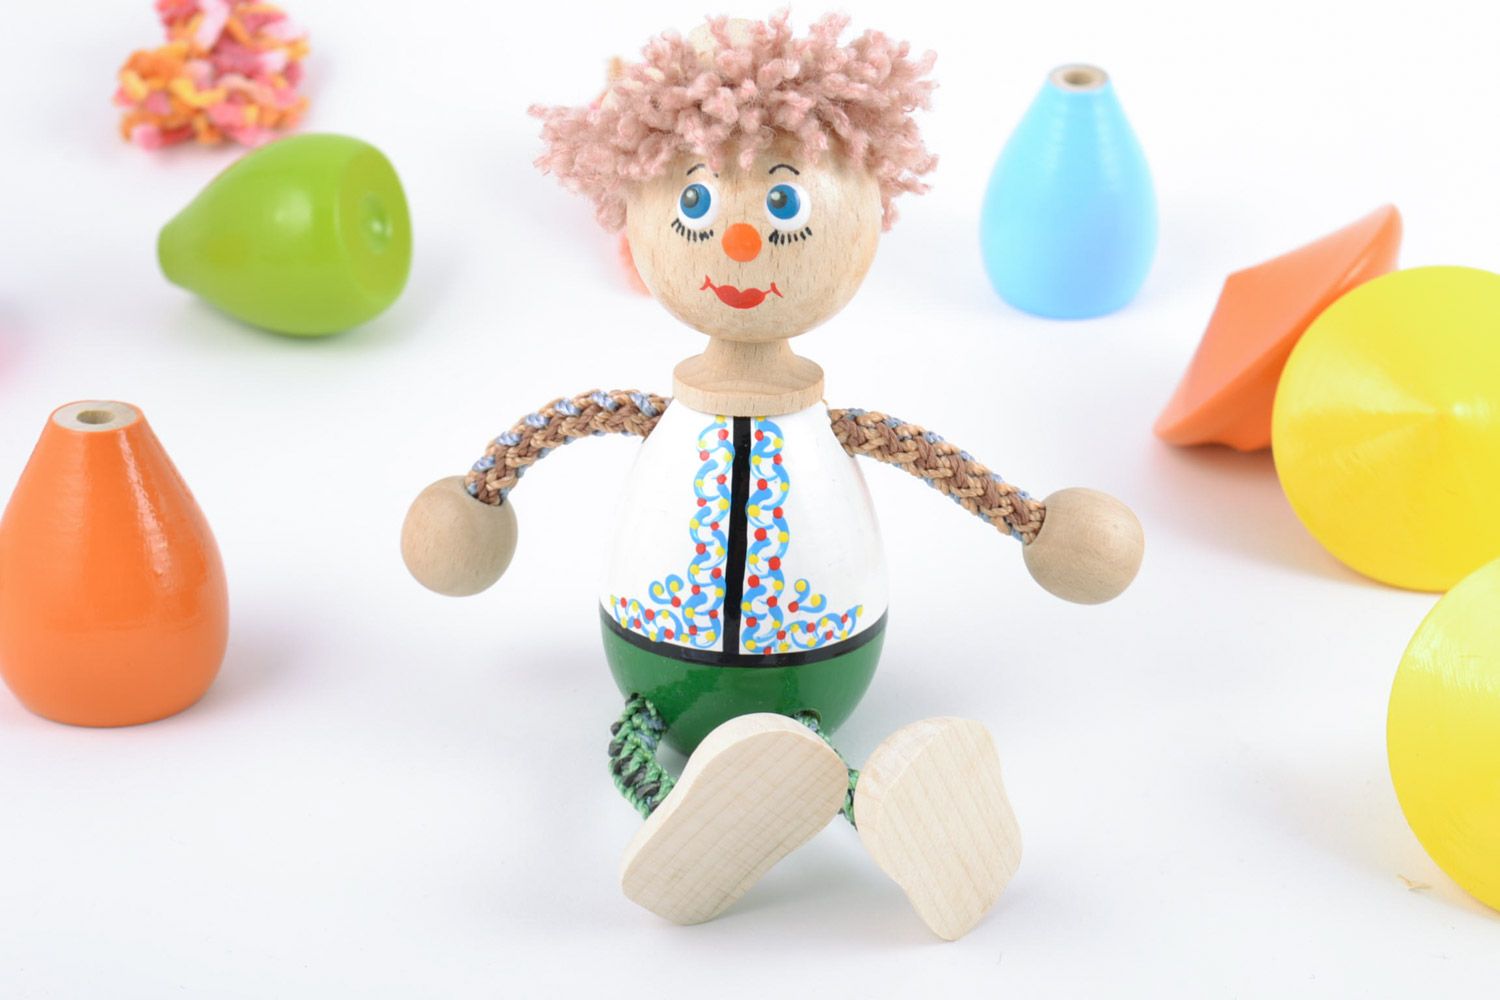 Jouet en bois original fait main peint figurine décorative pour enfant Garçon photo 1